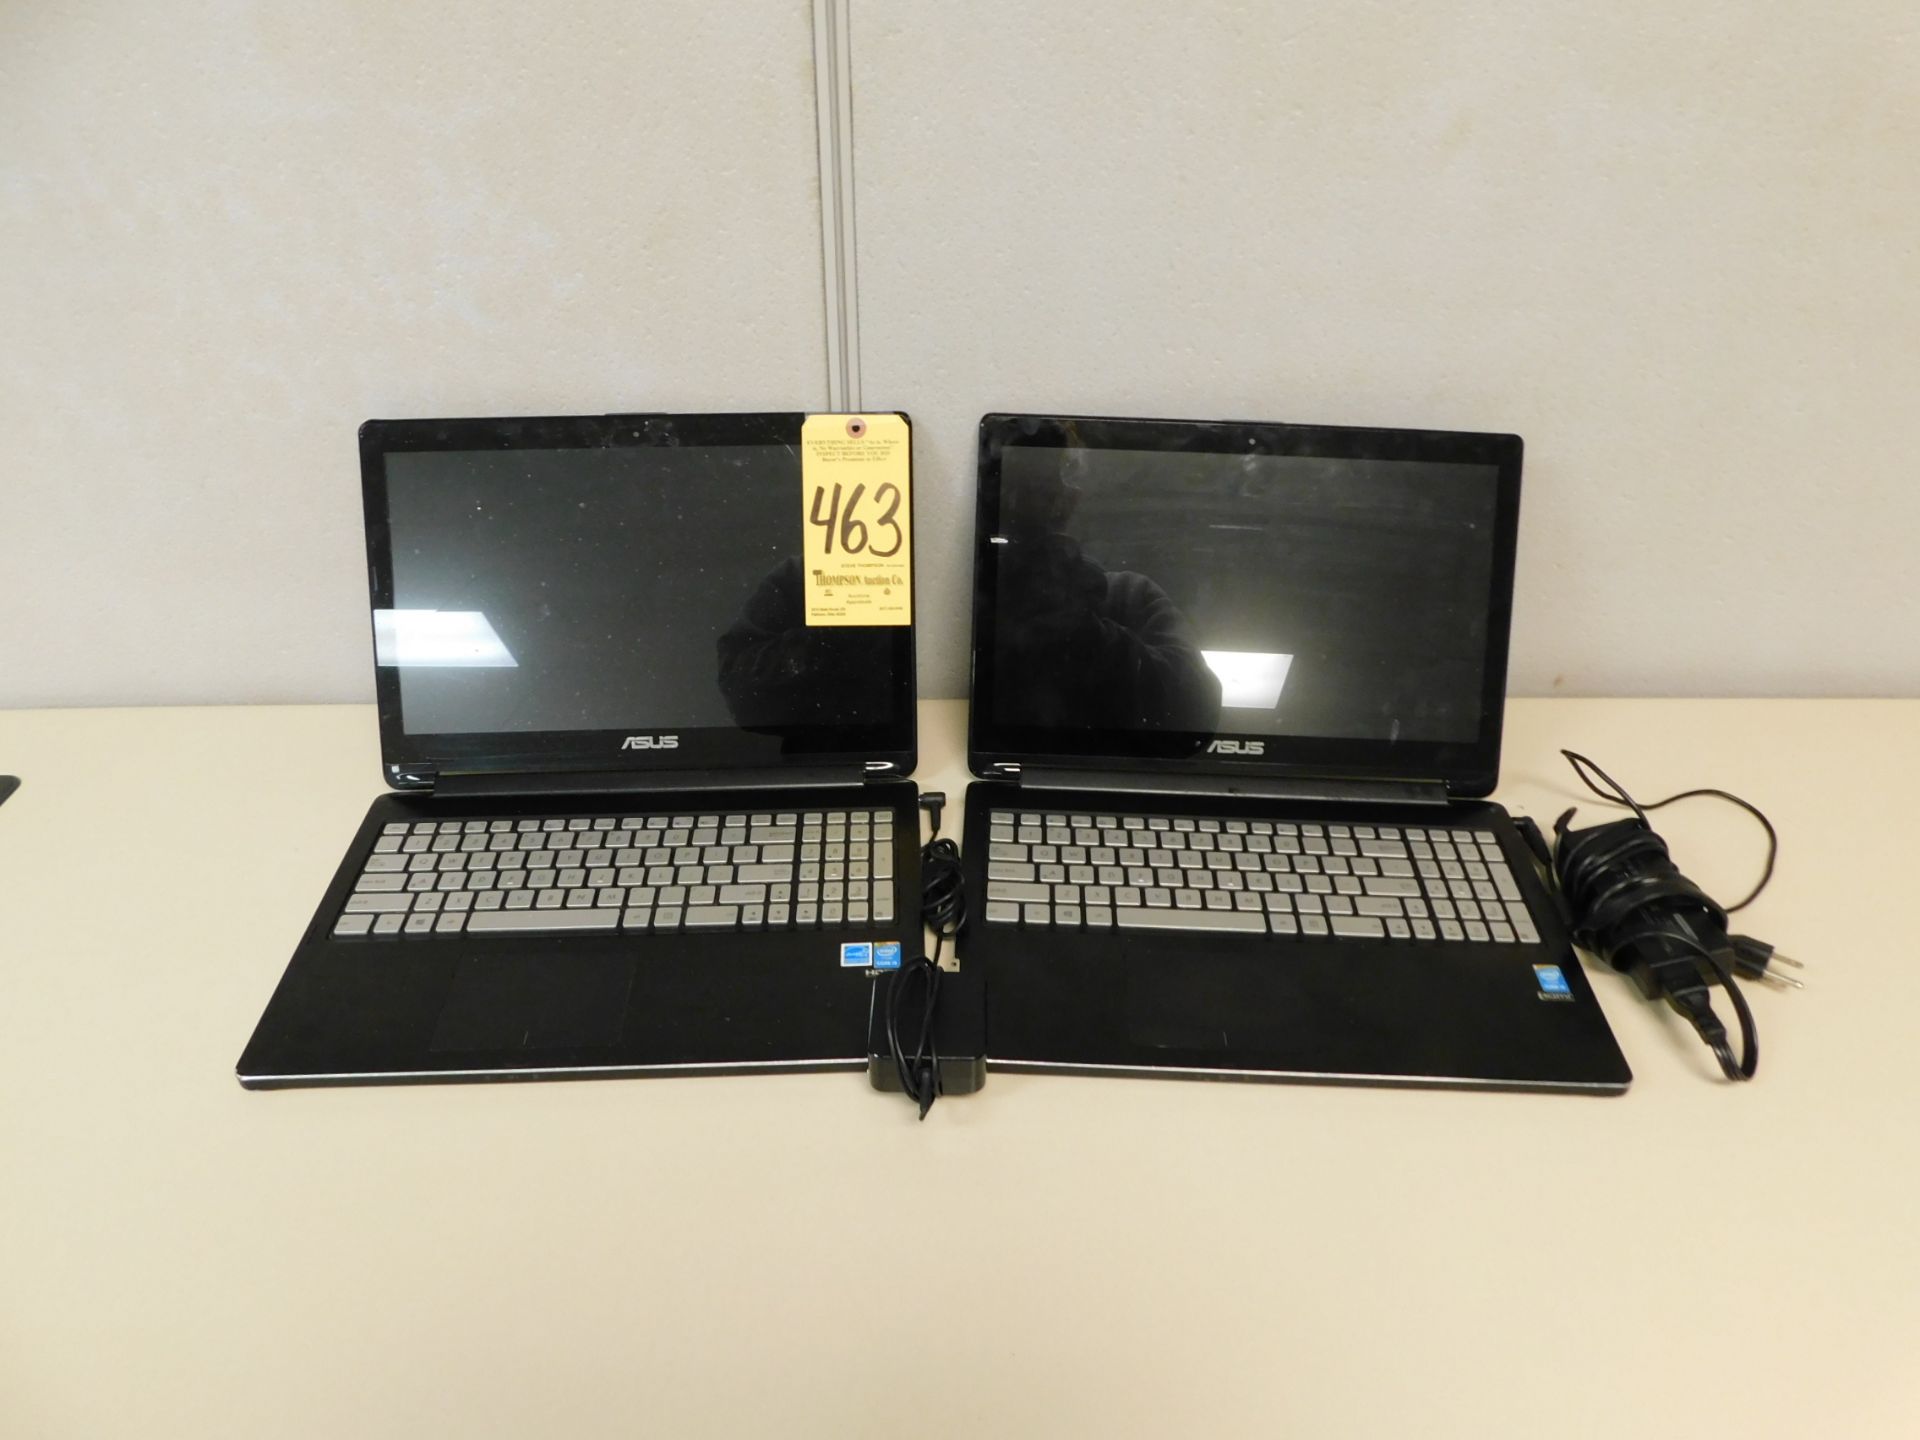 (2) Asus Laptops